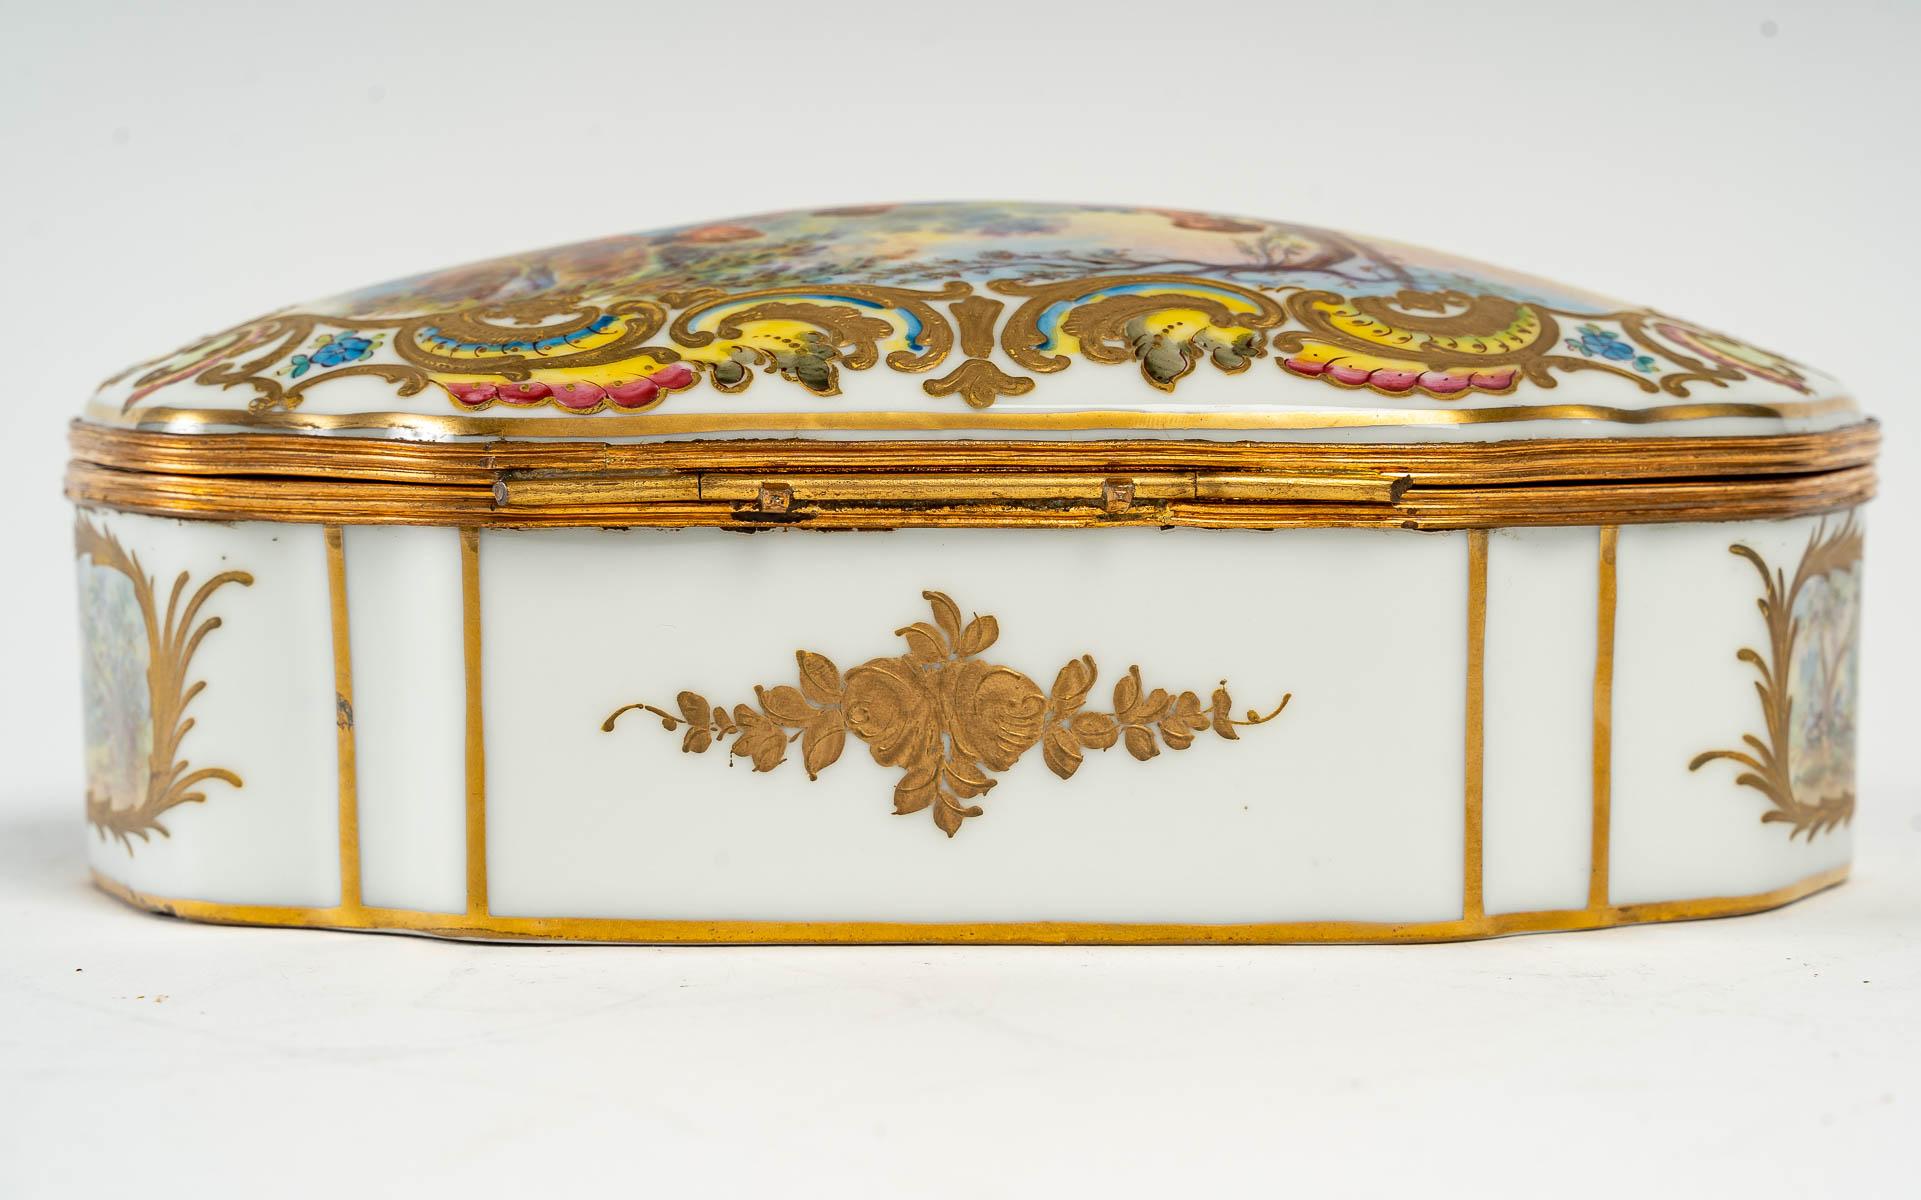 Napoleon III Porcelain Box with Elegant Scene, 19th Century